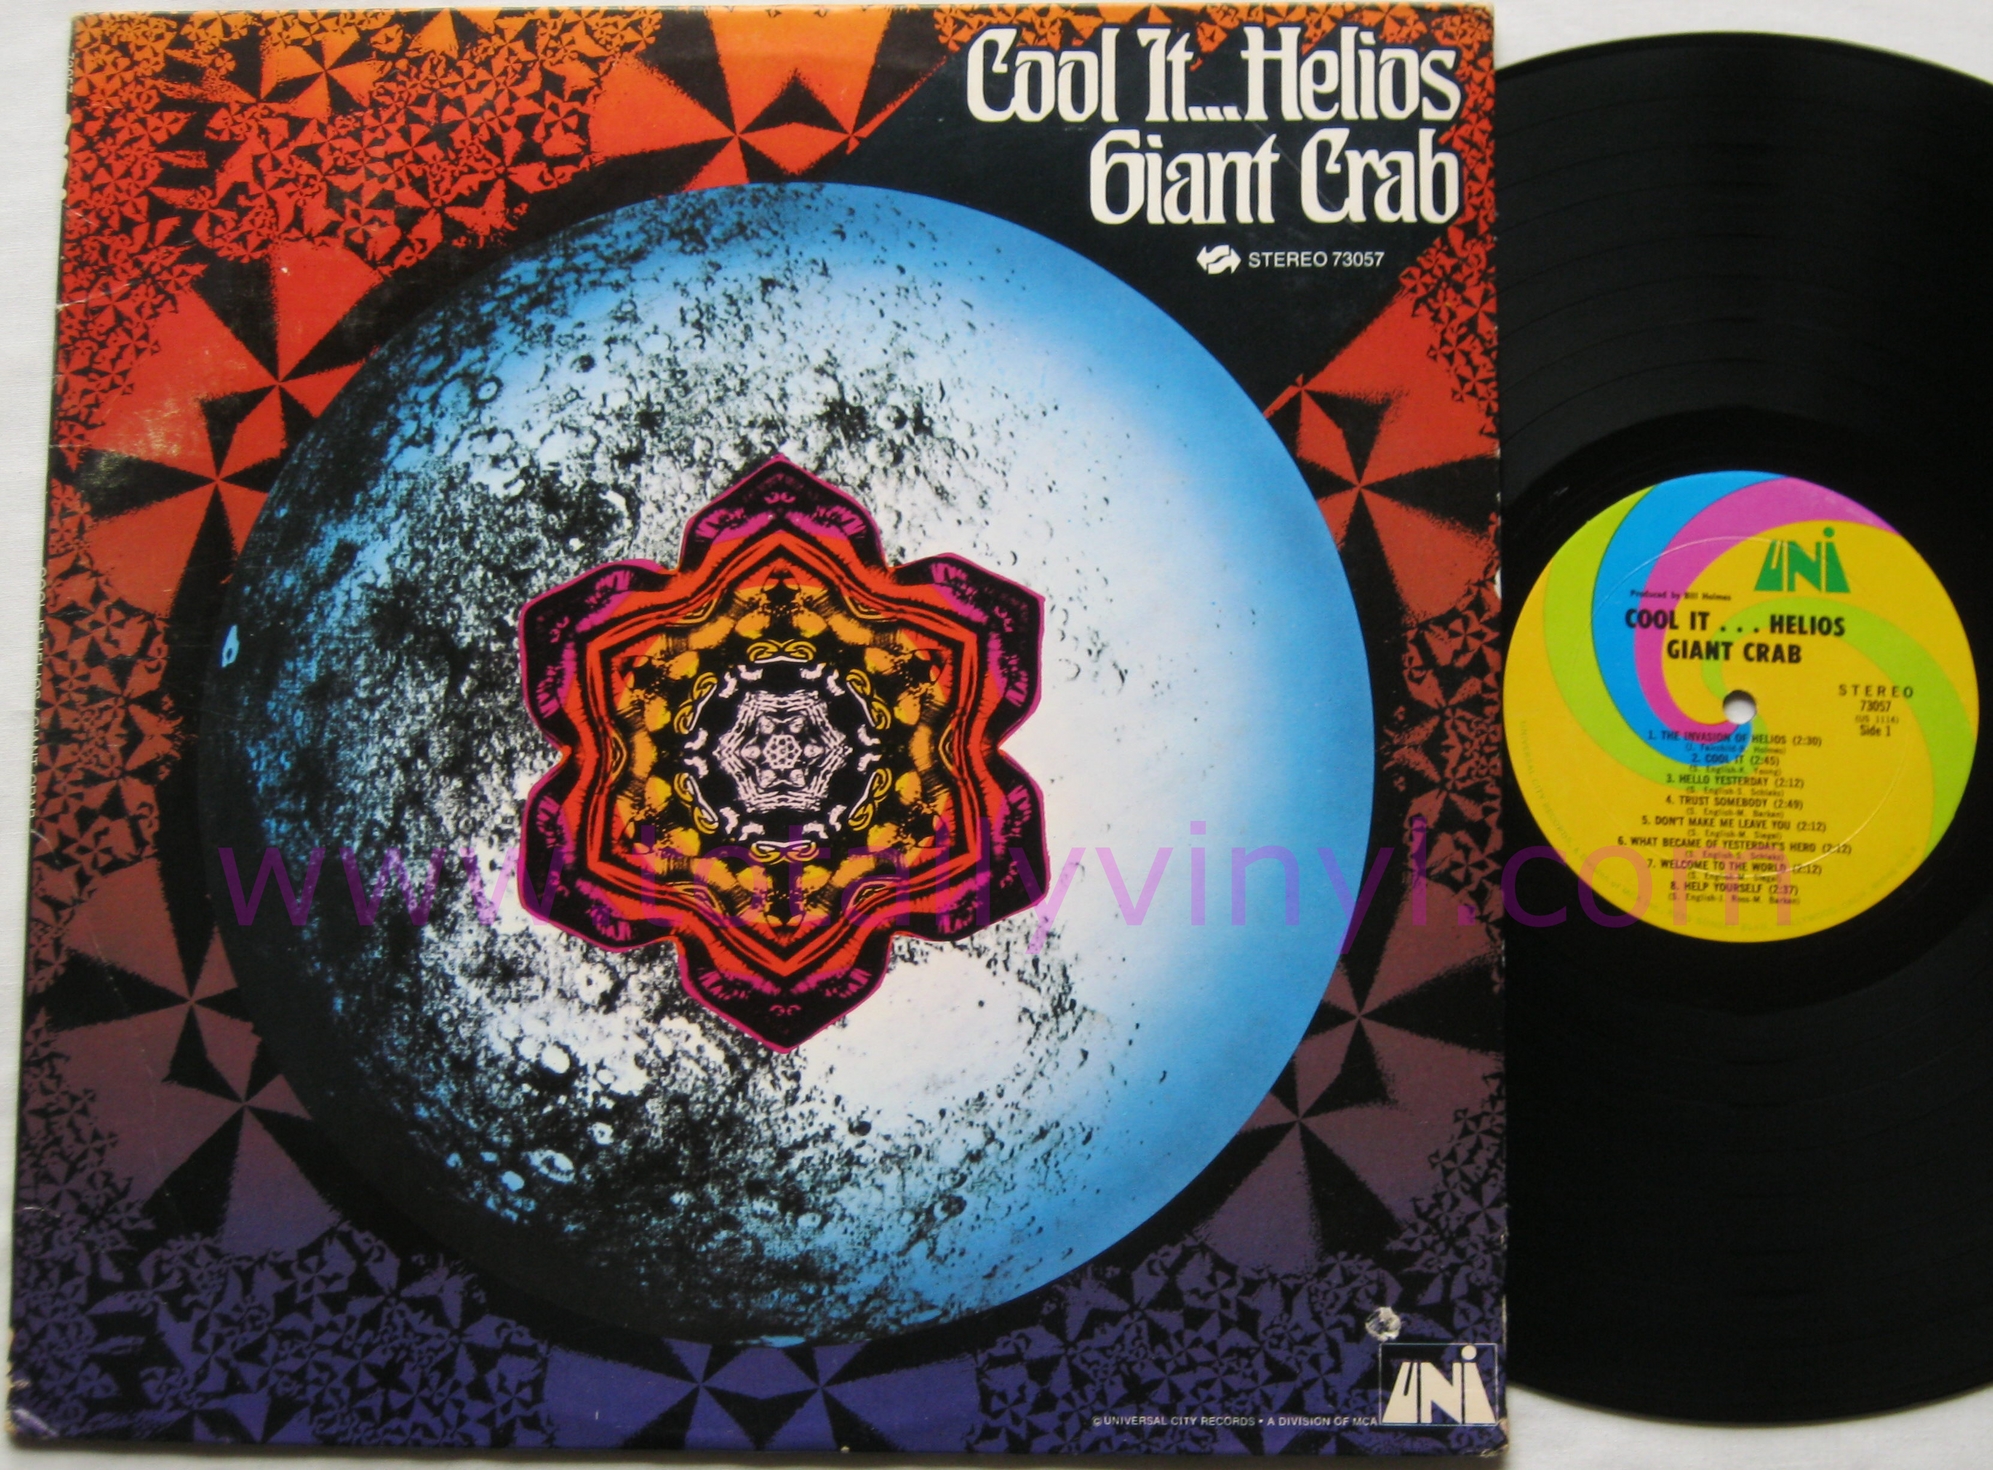 Totally Vinyl Records || Giant Crab - Cool it..Helios LP Vinyl